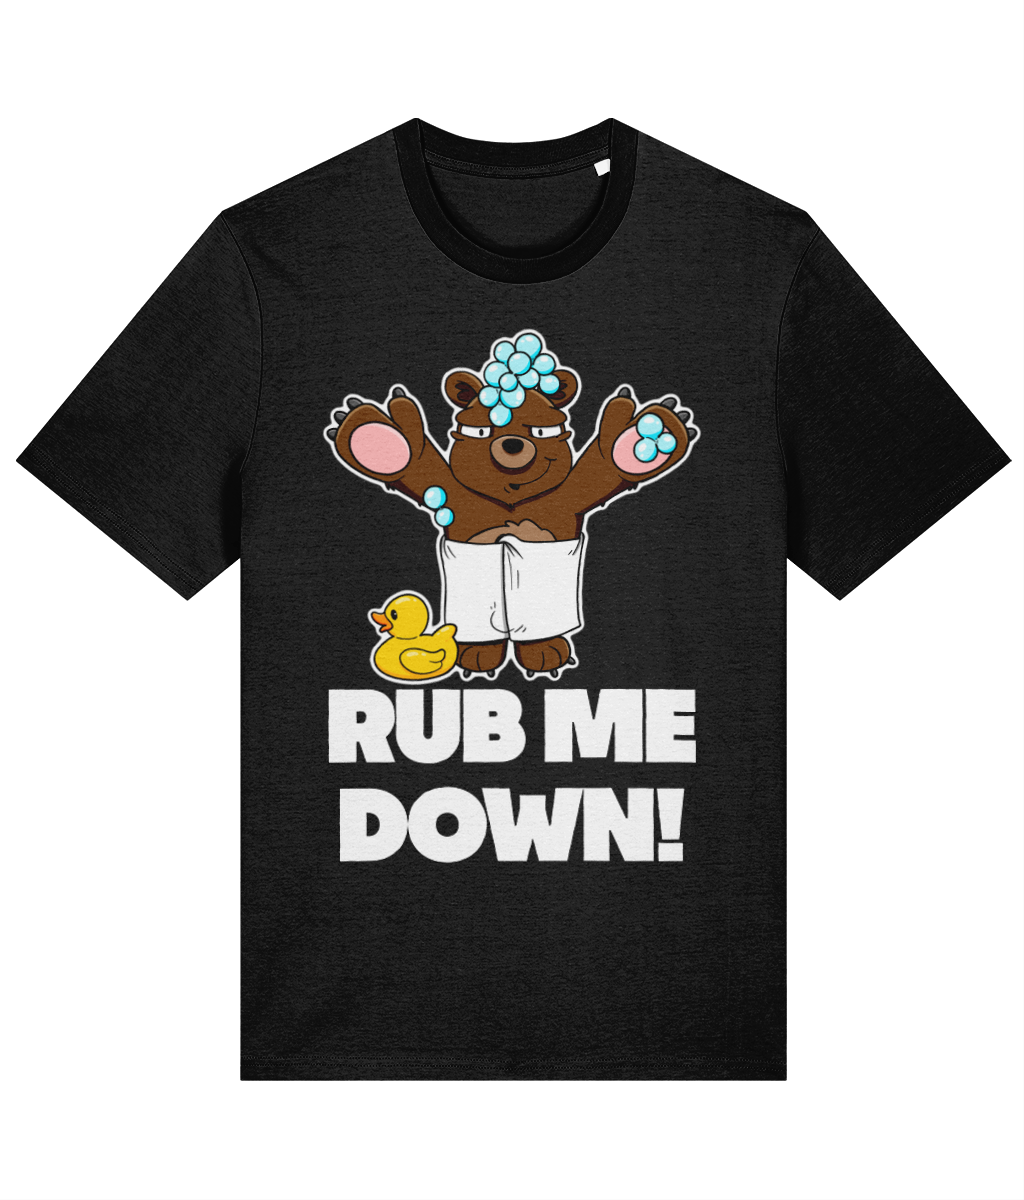 Rub Me Down! T-Shirt